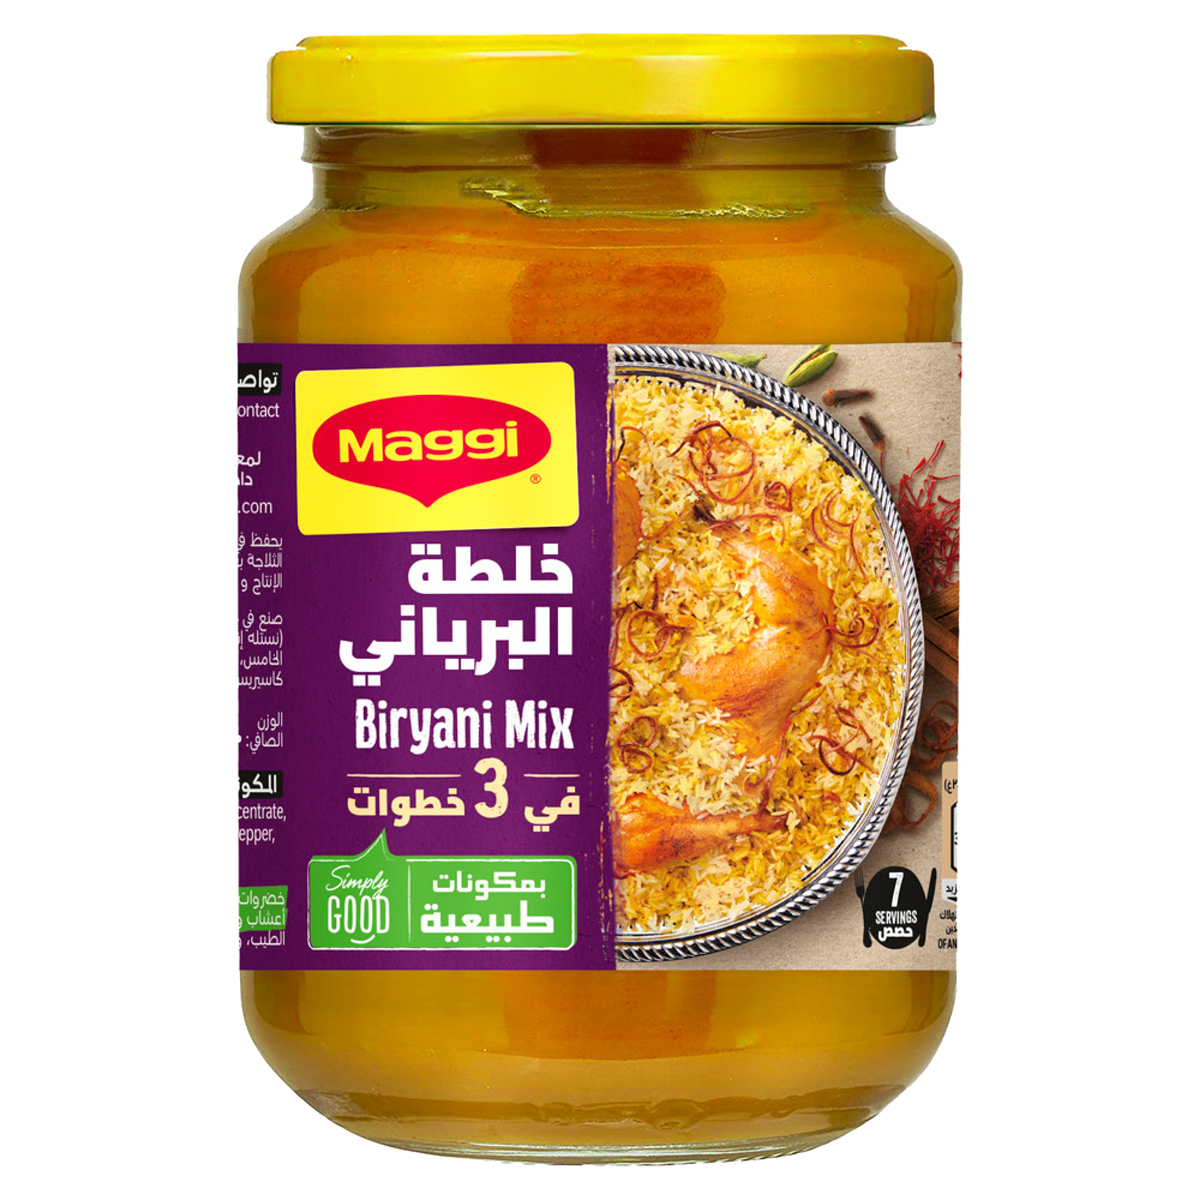 Maggi Biryani Mix Value Pack 350 g